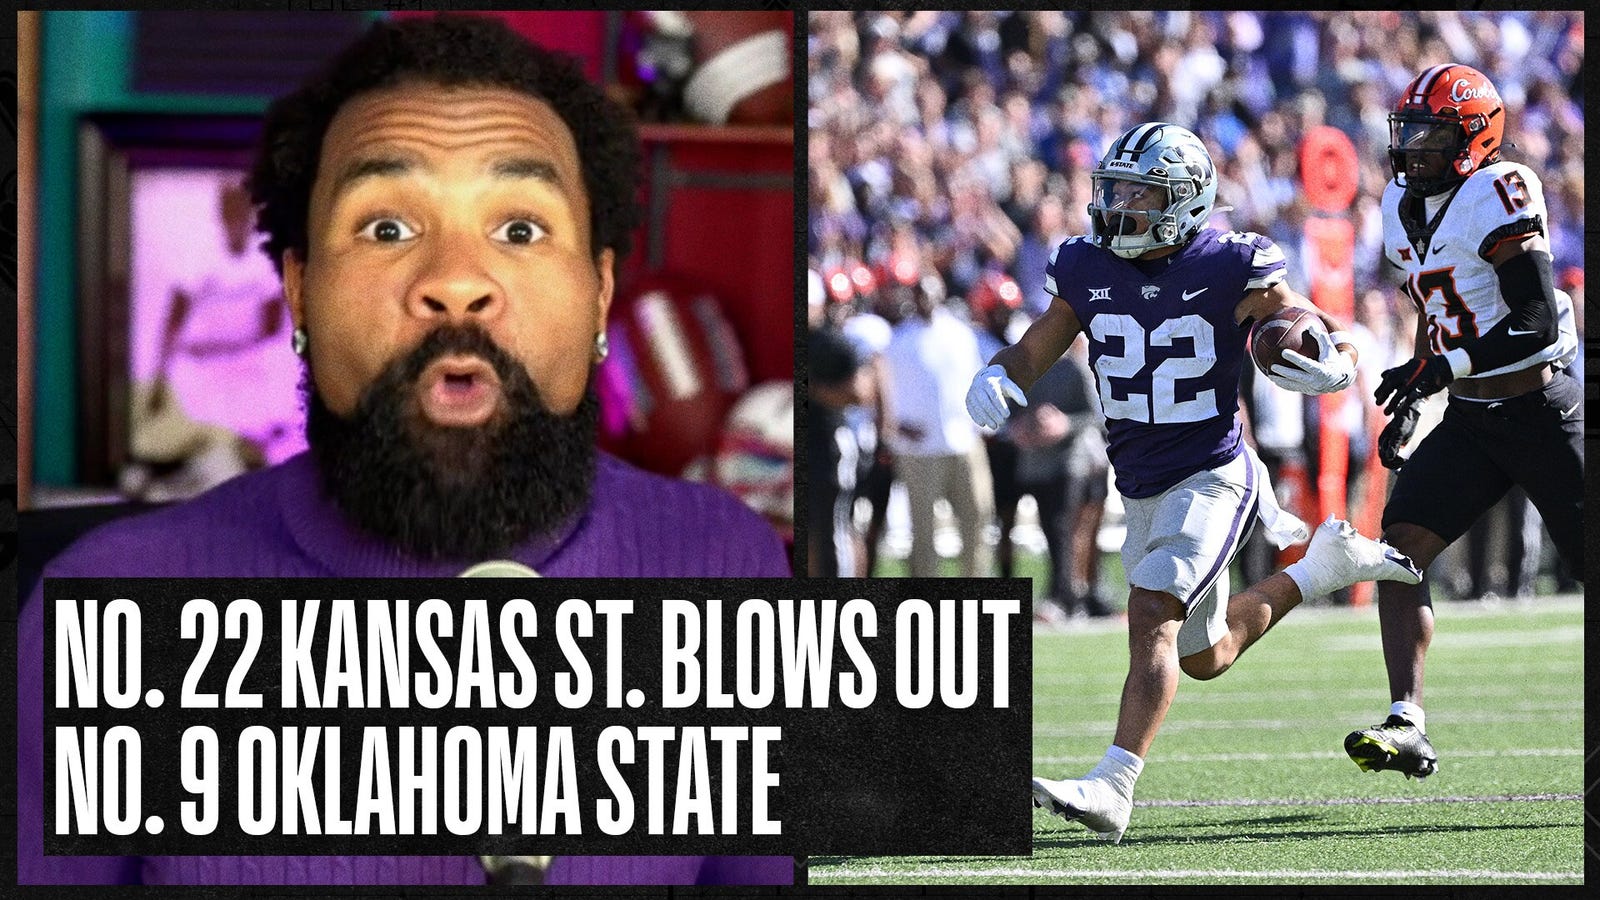 Kansas St. blows out Oklahoma State